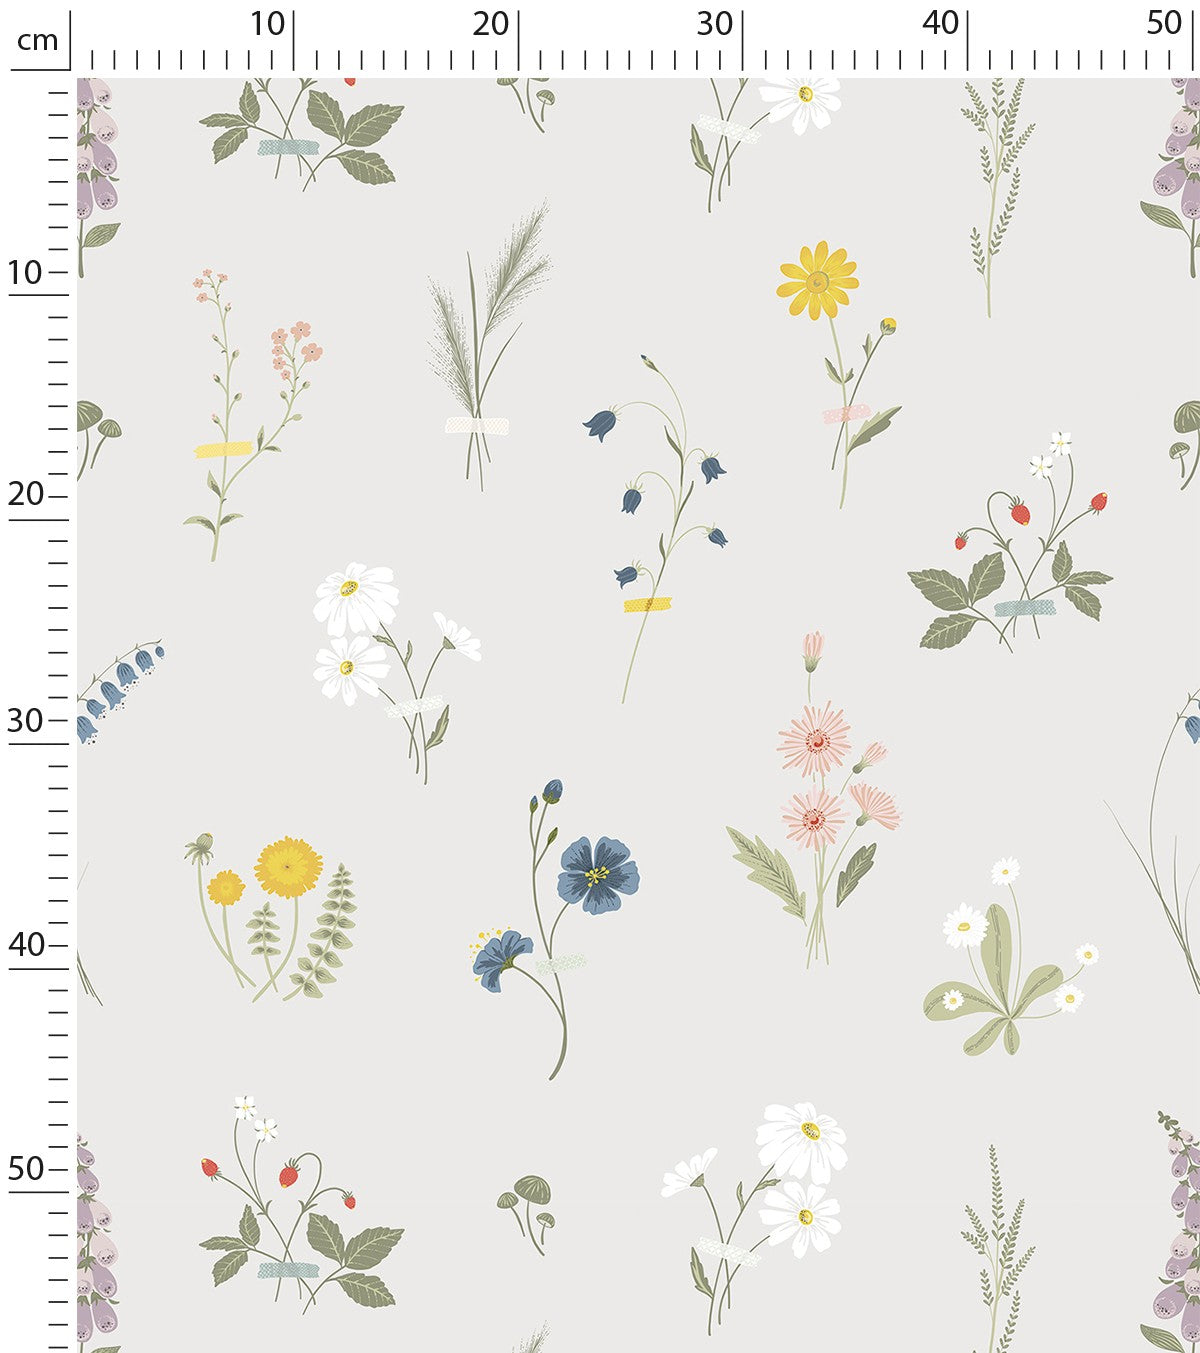 WILDFLOWERS - Children's wallpaper - Prairie flower motif